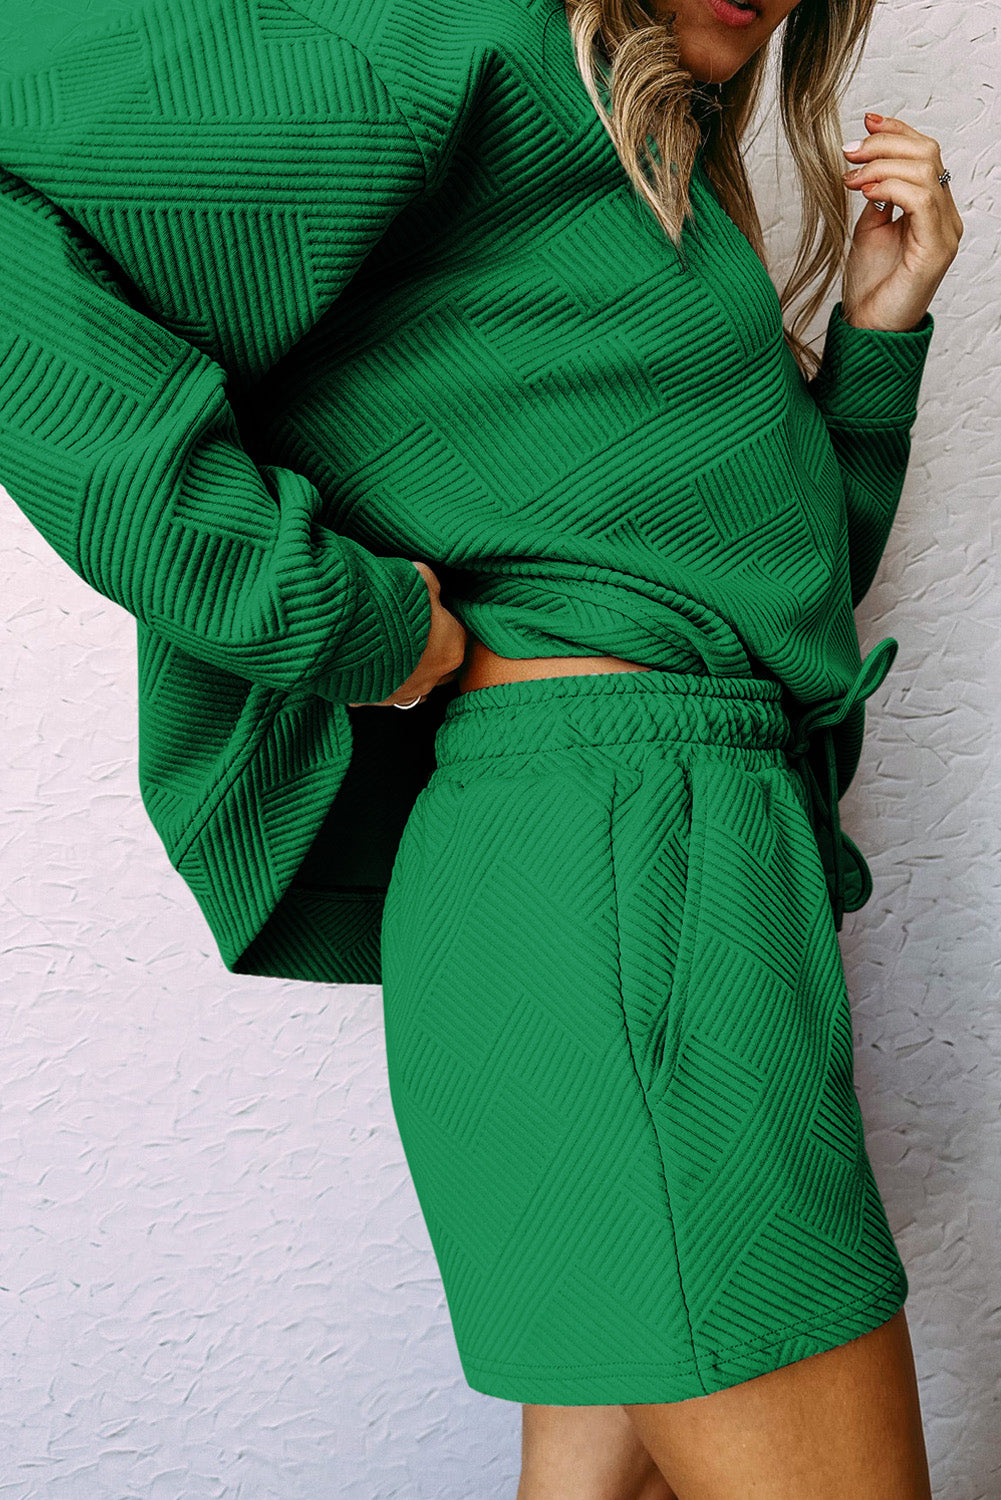 Grünes, strukturiertes Langarm-Top und Shorts mit Kordelzug